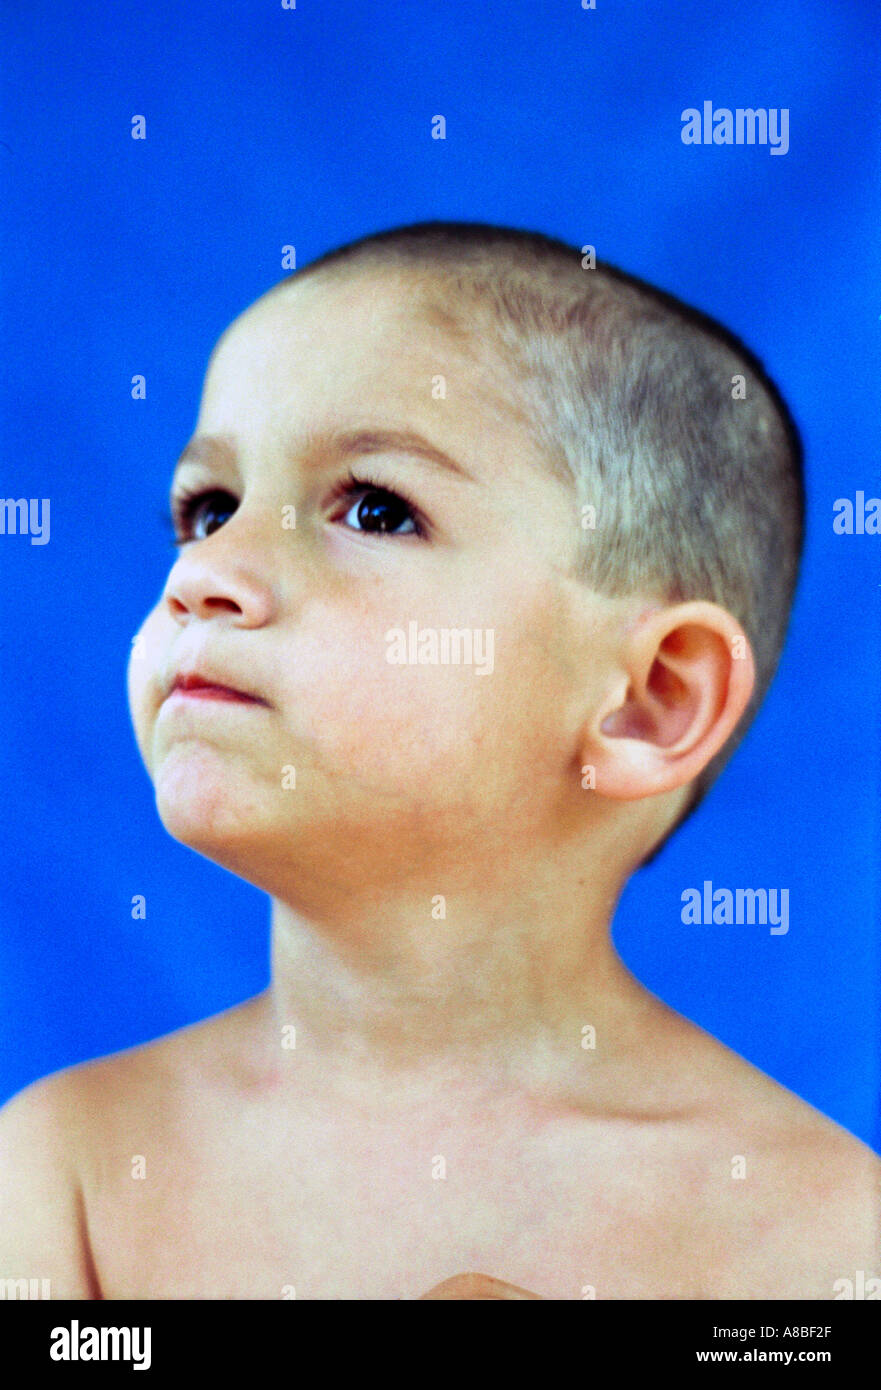 Porträt von Babyboy mit rasiertem Kopf Stockfoto